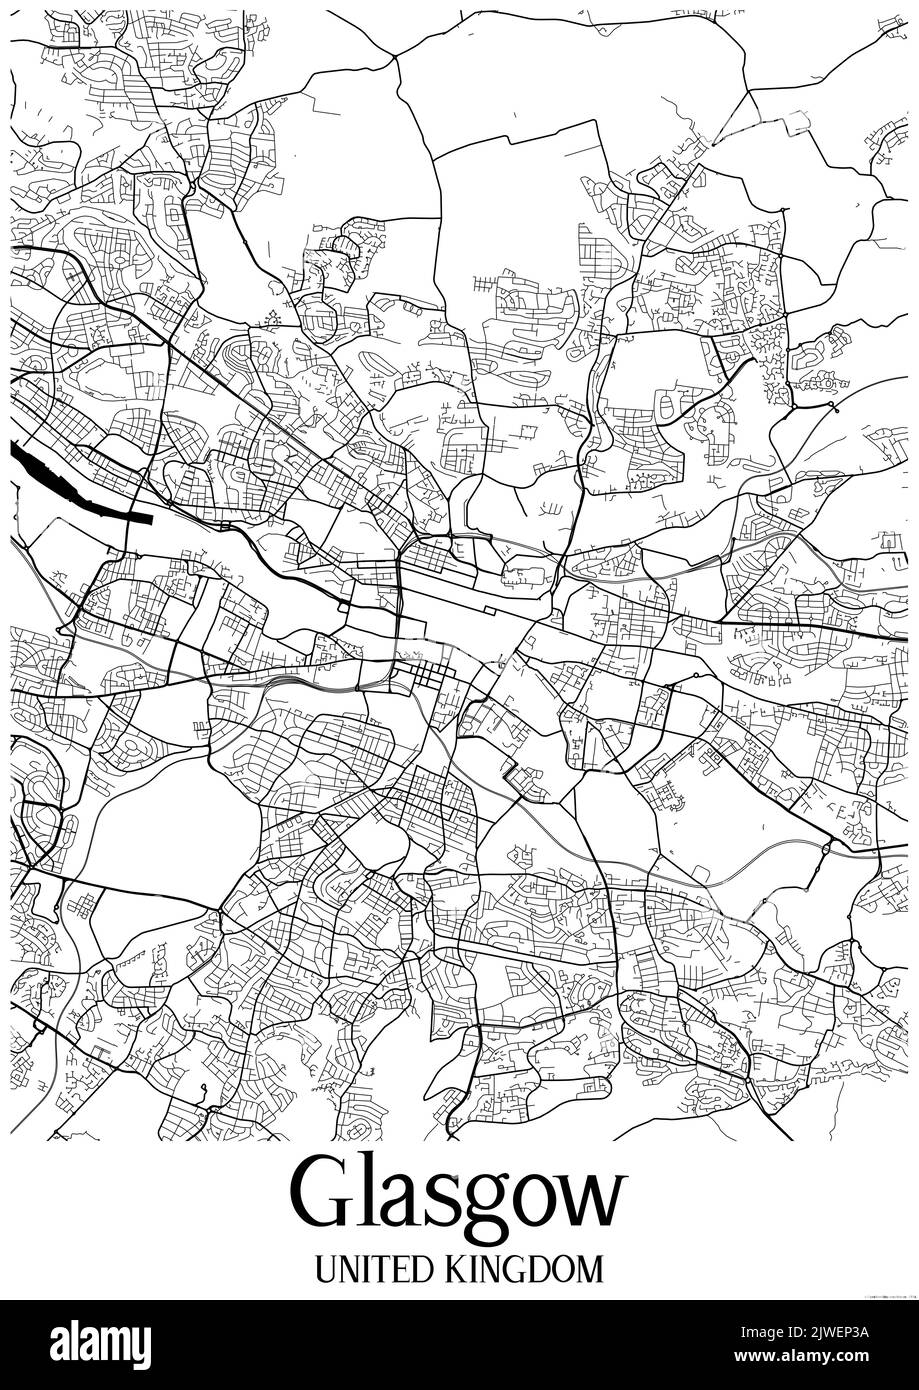 Mappa urbana classica in bianco e nero di Glasgow United Kingdom. Questa mappa contiene le linee geografiche per le strade principali e secondarie. Foto Stock